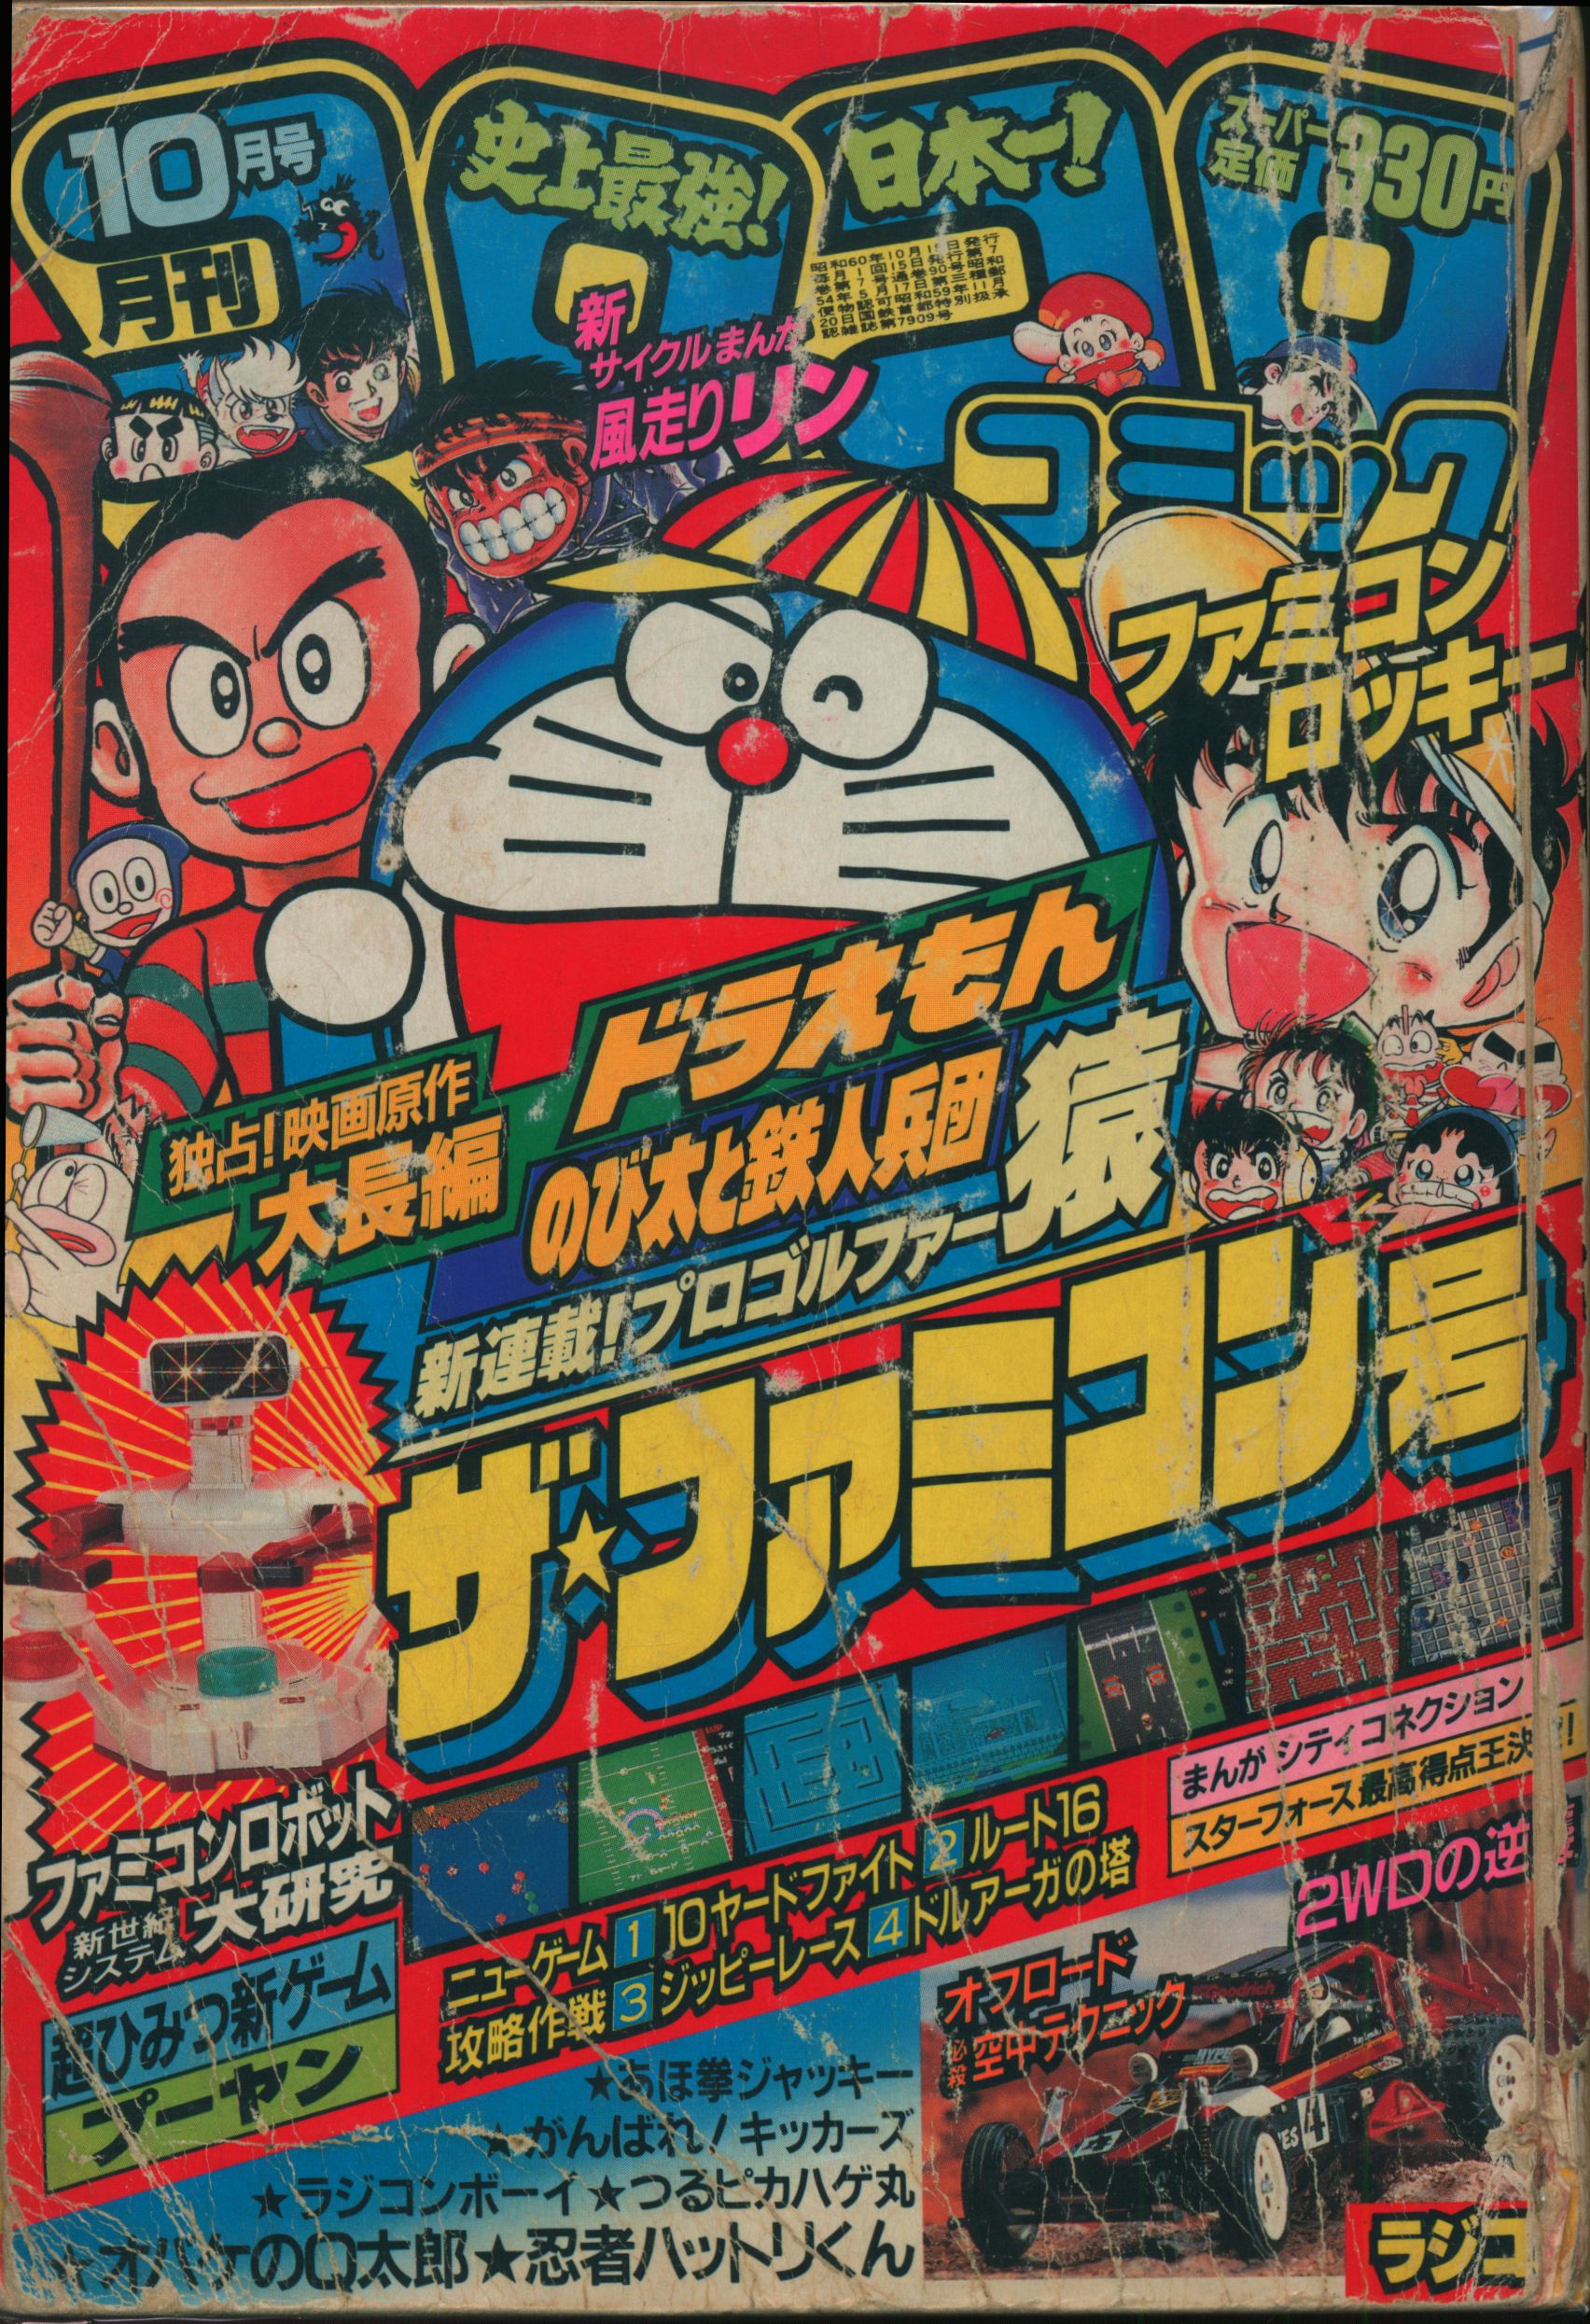 小学館 1985年 昭和60年 の漫画雑誌 コロコロコミック 1985年 昭和60年 10 月号 90 まんだらけ Mandarake